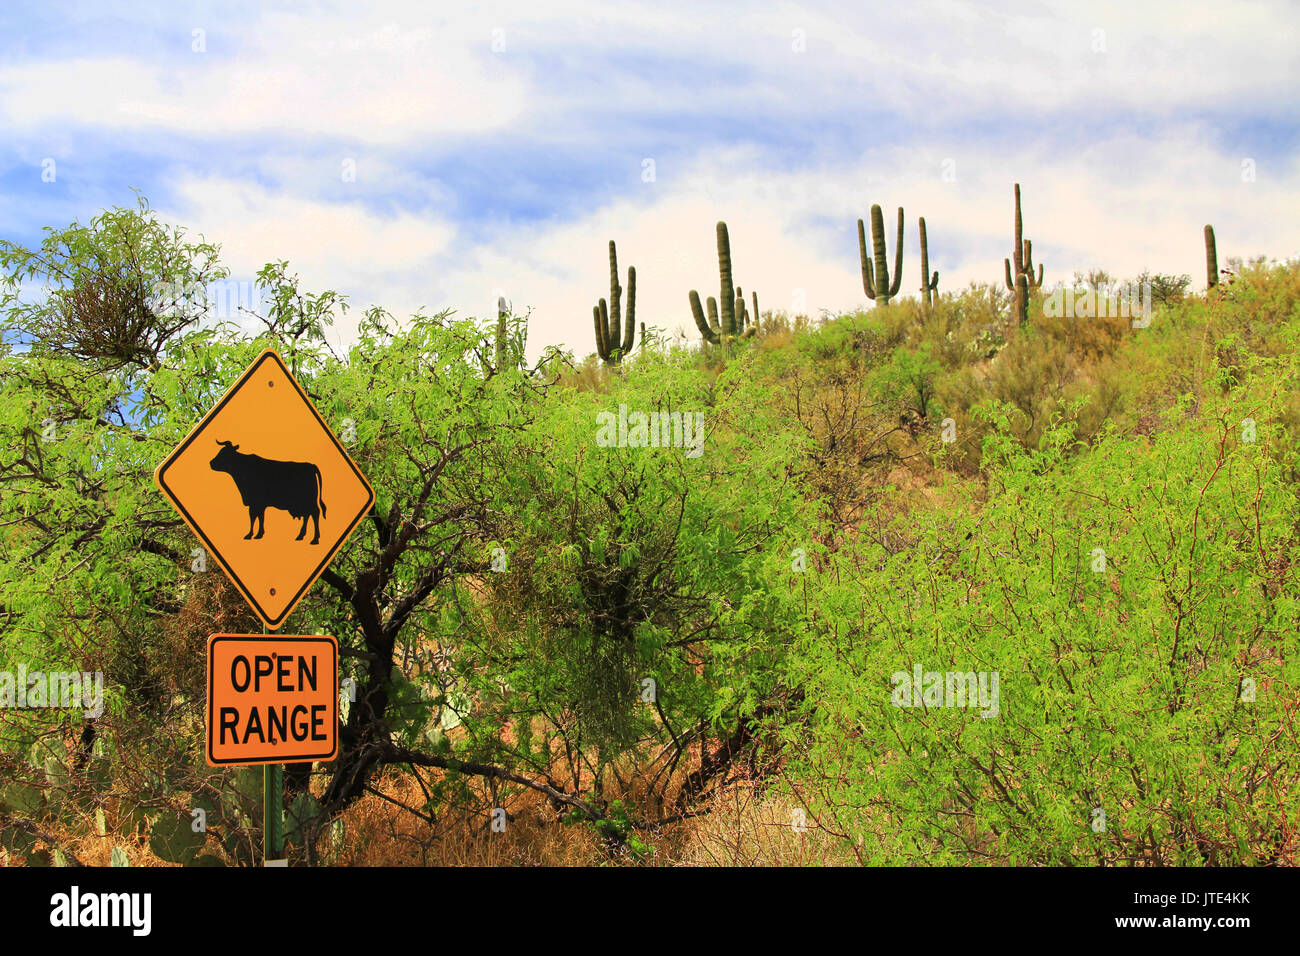 Open Range ganado cruzando la señal de advertencia a lo largo de una carretera en Arizona. Foto de stock